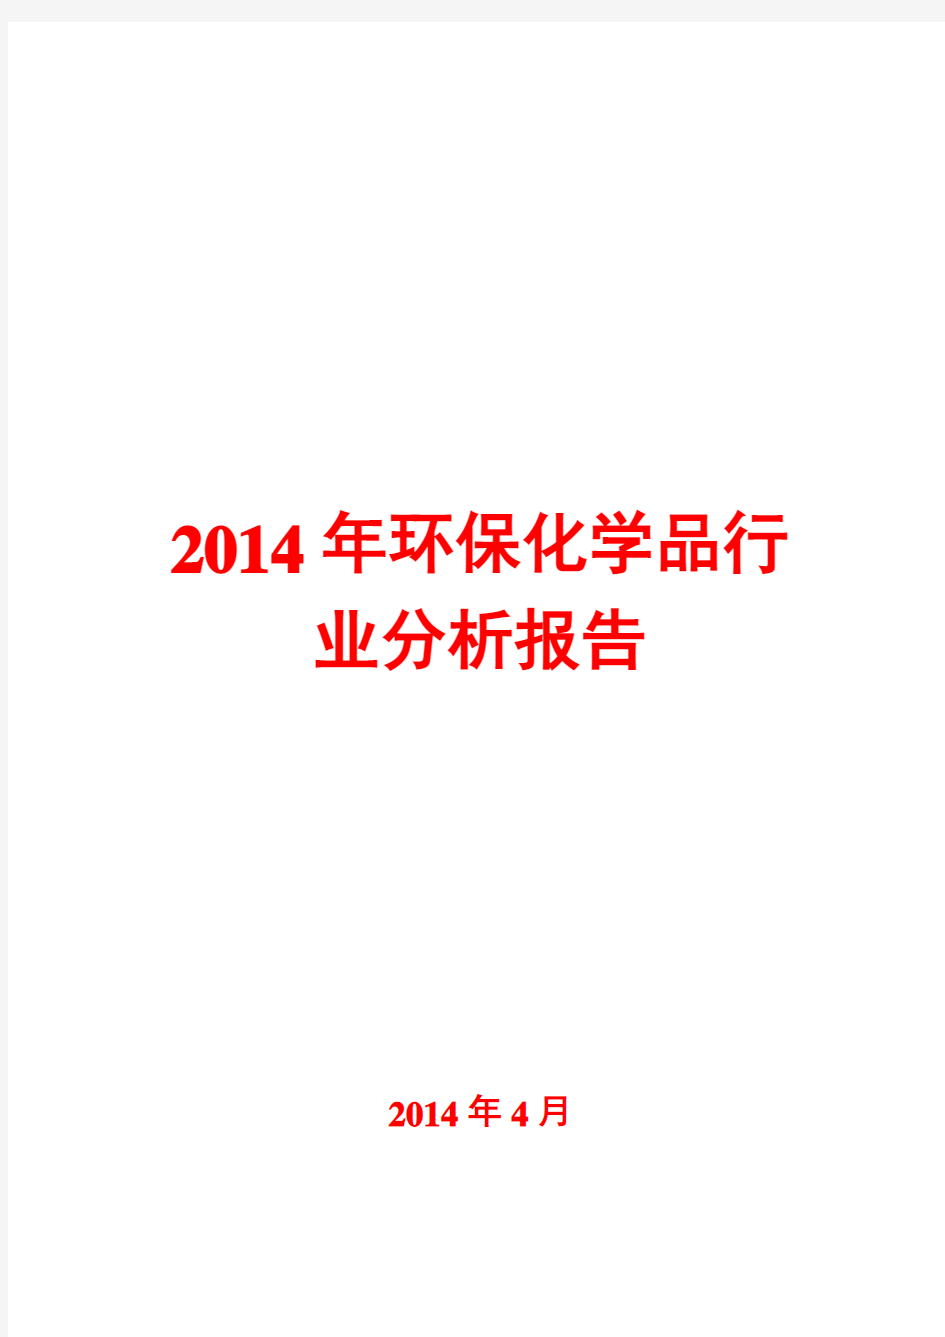 2014年环保化学品行业分析报告